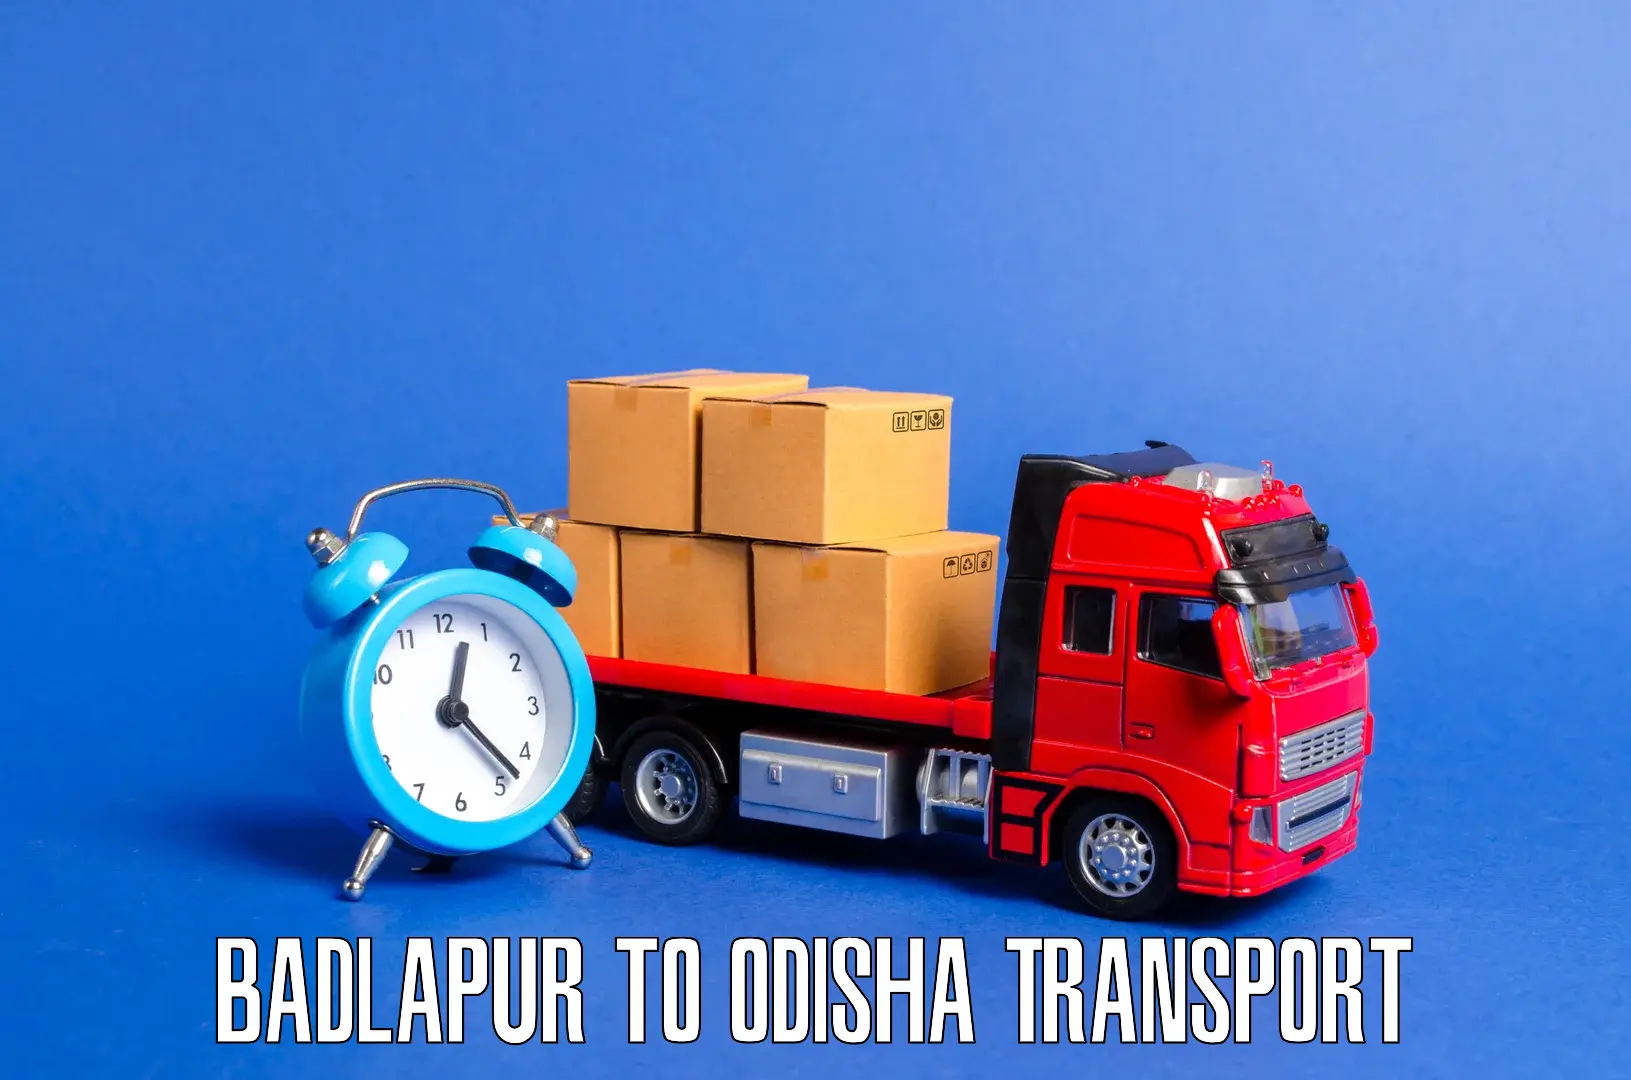 Luggage transport services Badlapur to Kuchinda